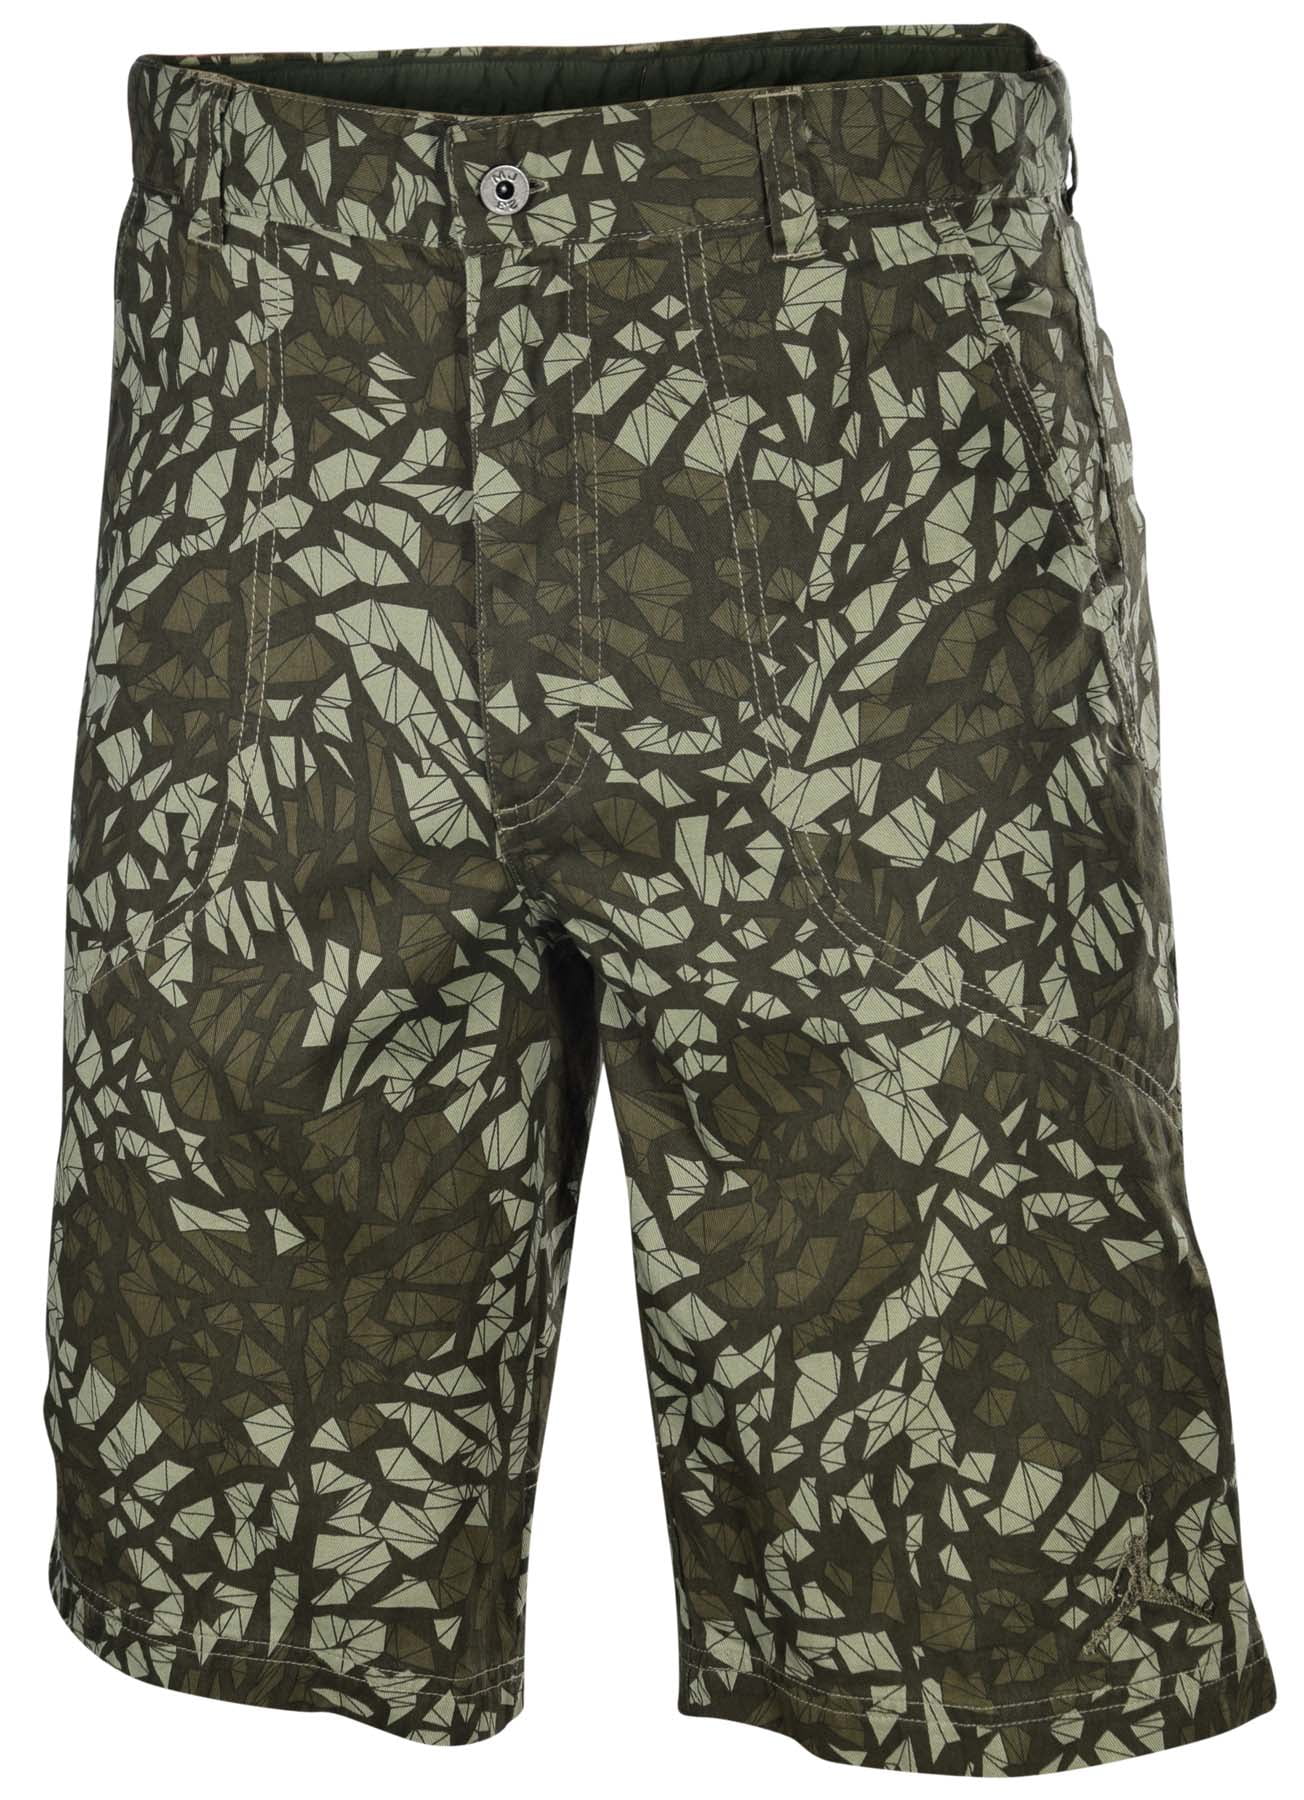 Mens Cargo Shorts Elephant Pattern Adjustable Shorts